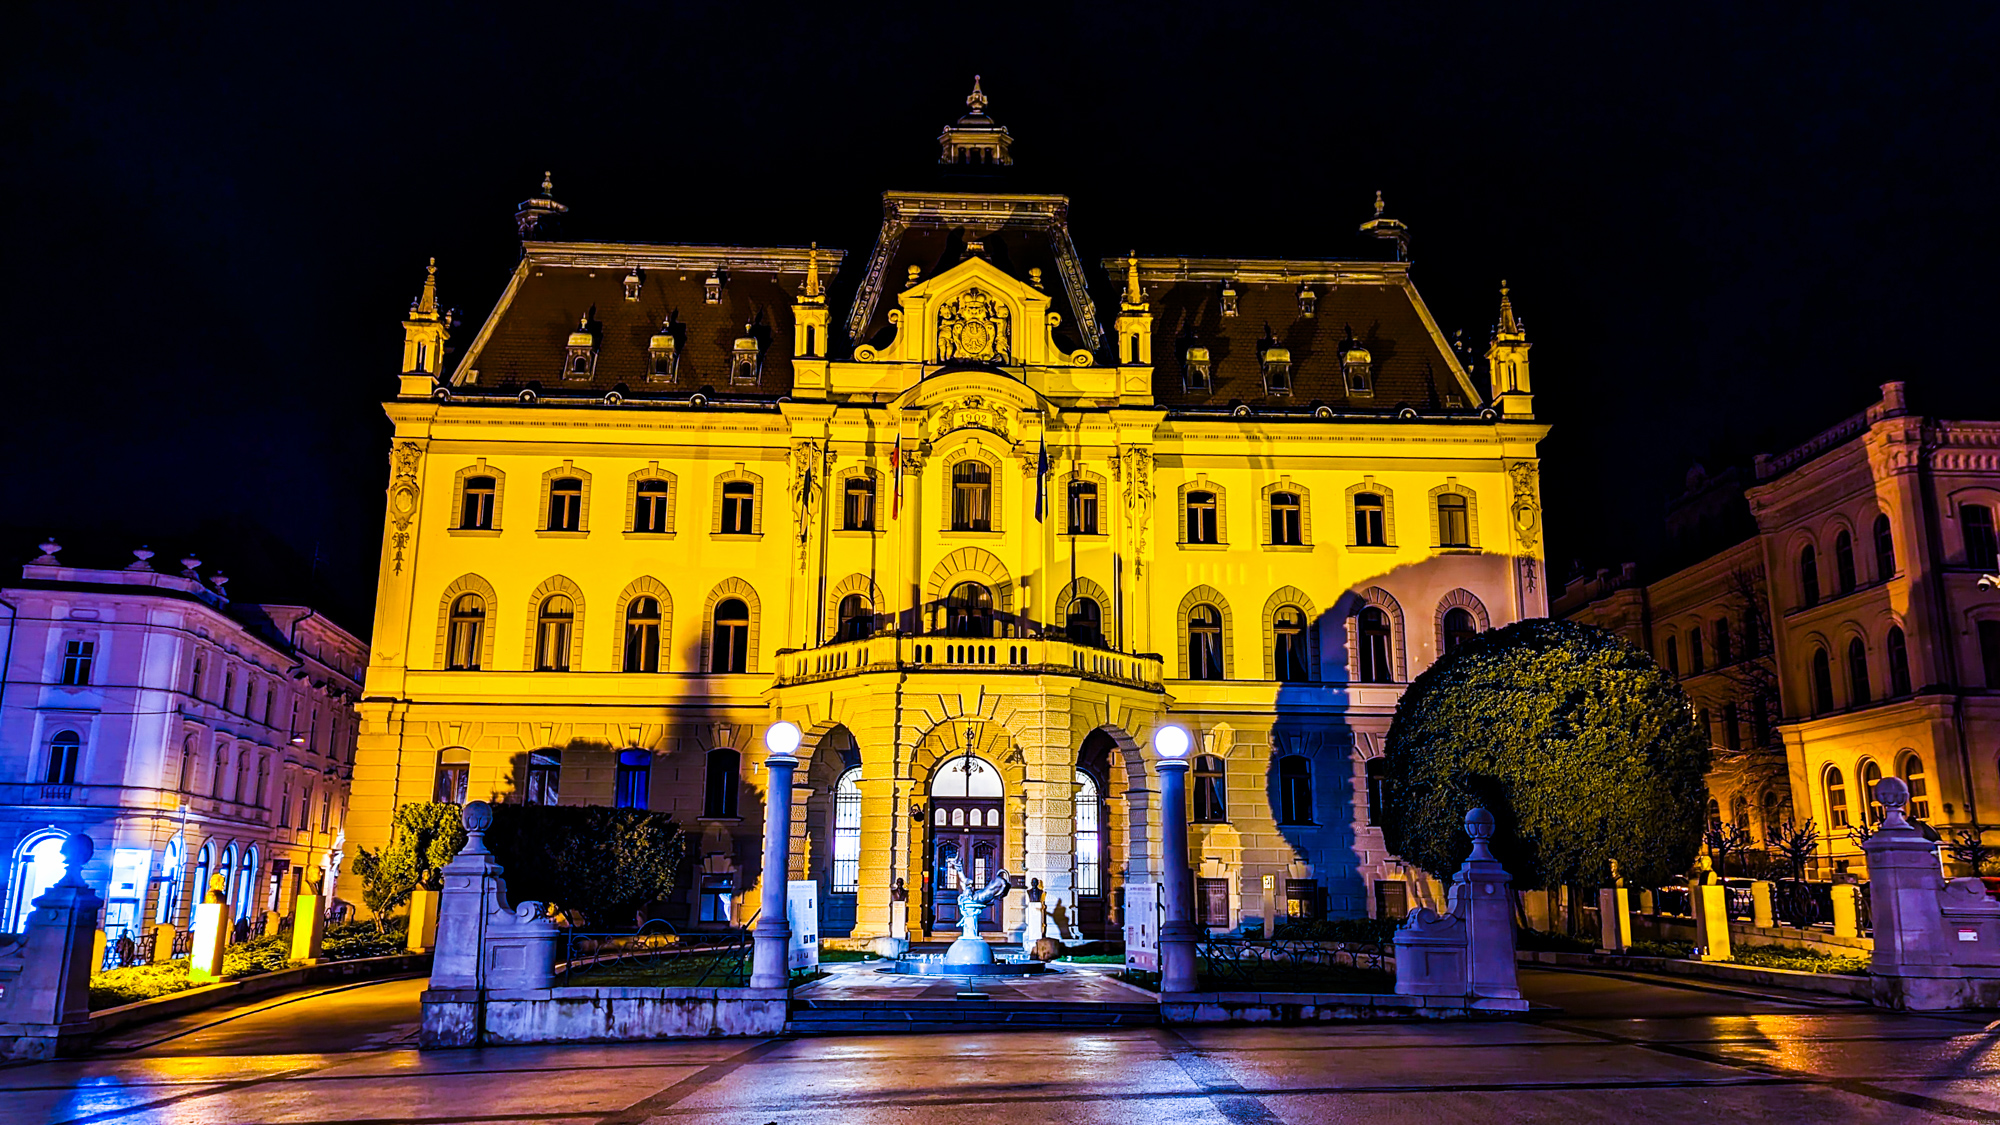 Univerza v Ljubljani, administratívna budova univerzity na námestí Kongresni trg.